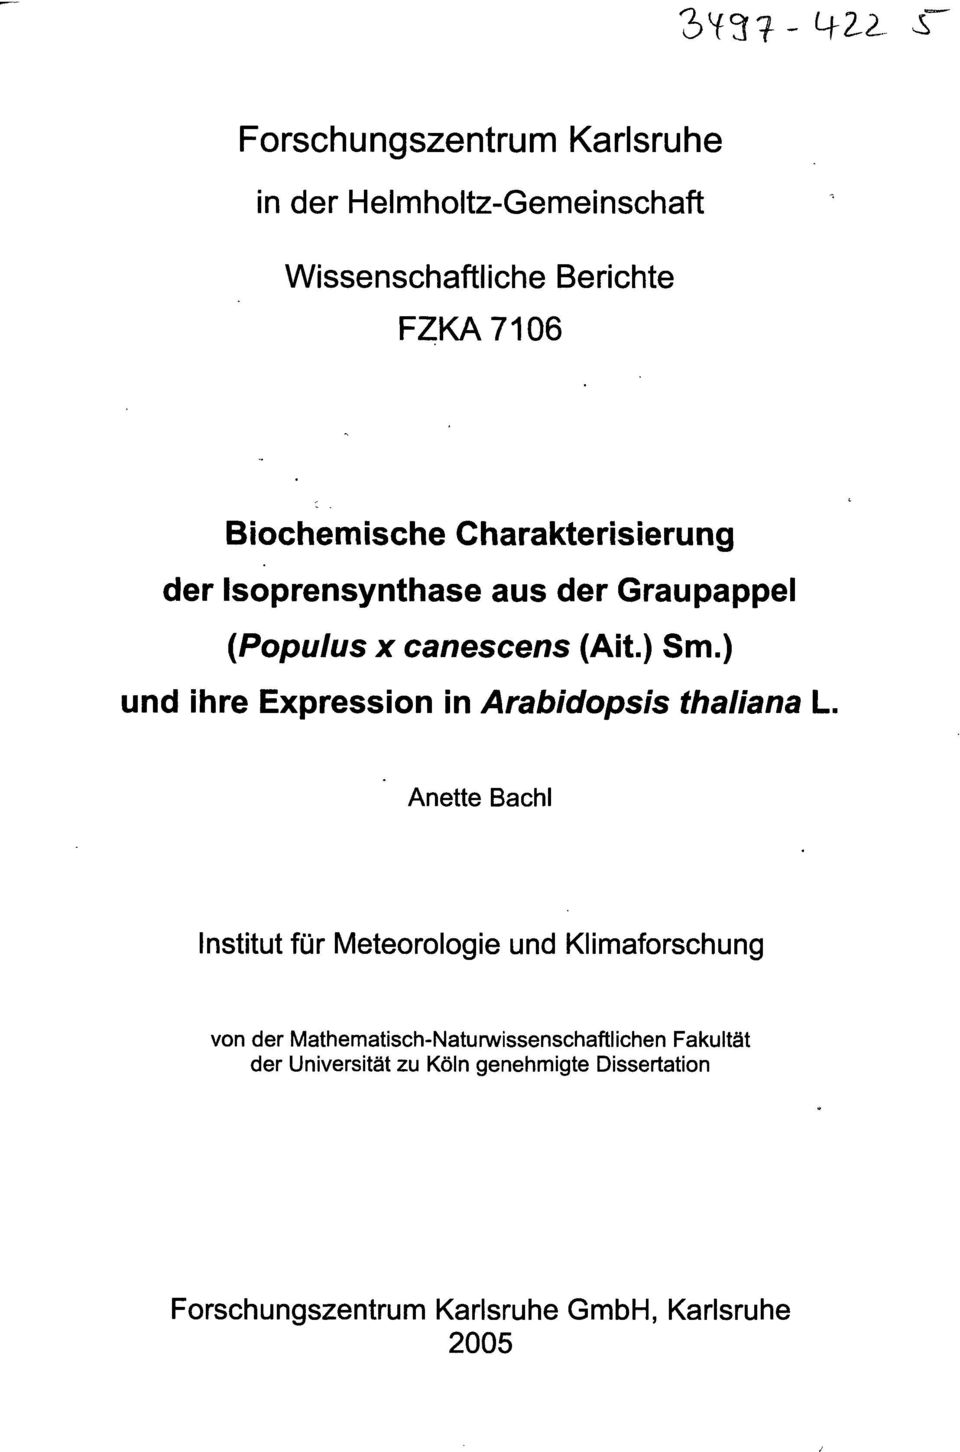 ) und ihre Expression in Arabidopsis thaliana L.